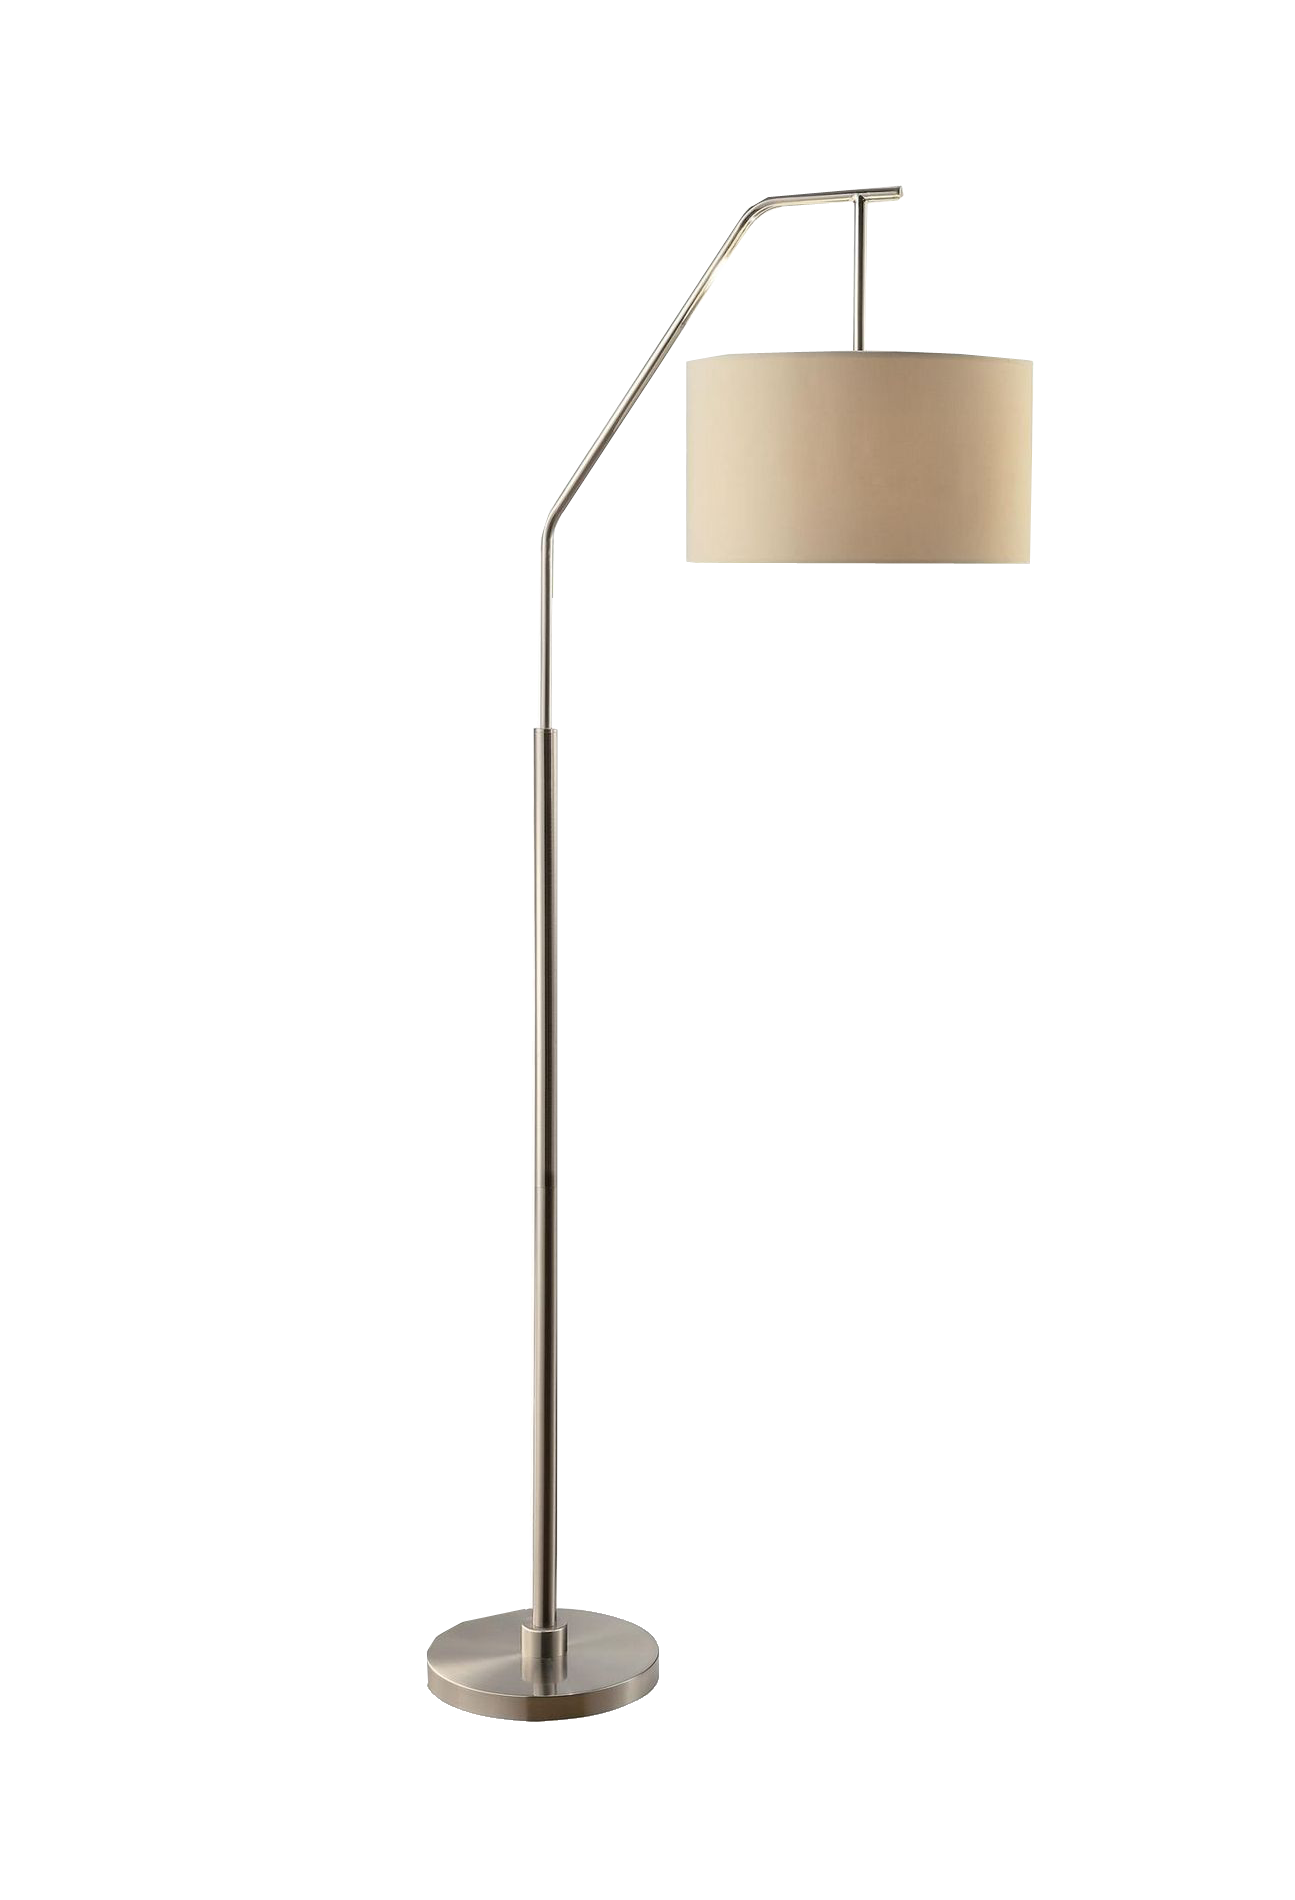 Standing Minimalist Lampe Light De Lamp Bureau Clipart